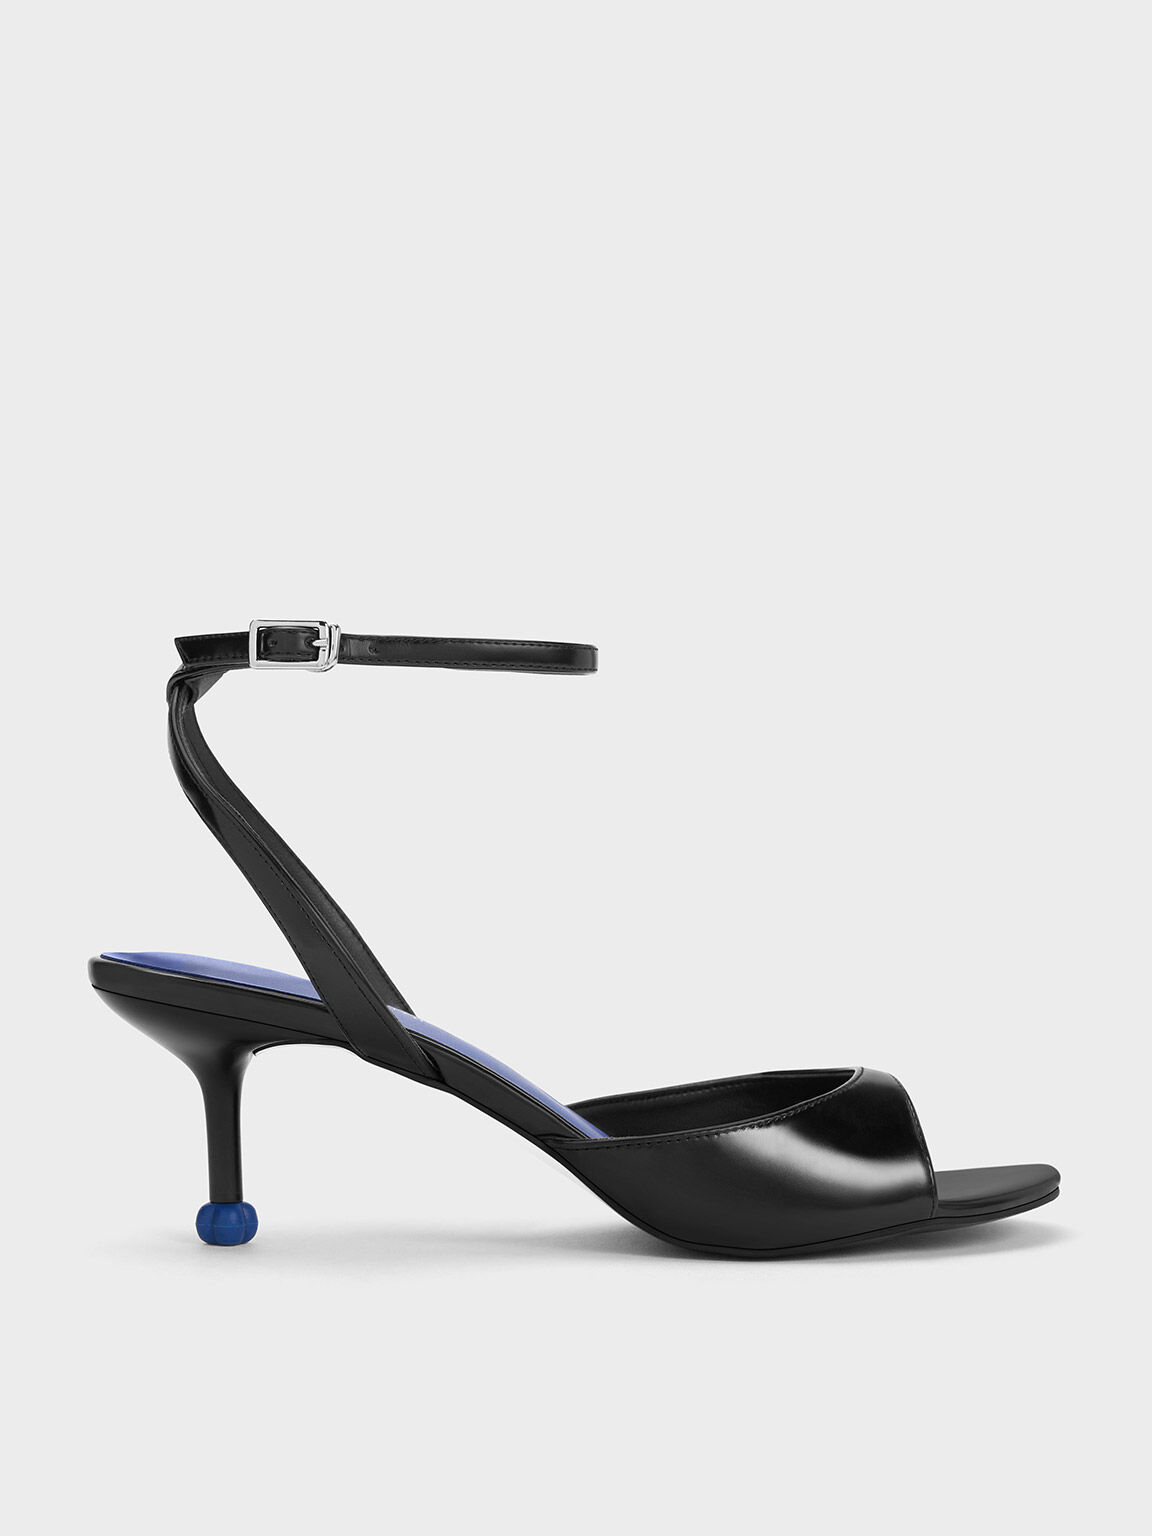 Sculptural Heel Ankle-Strap Pumps, Black, hi-res